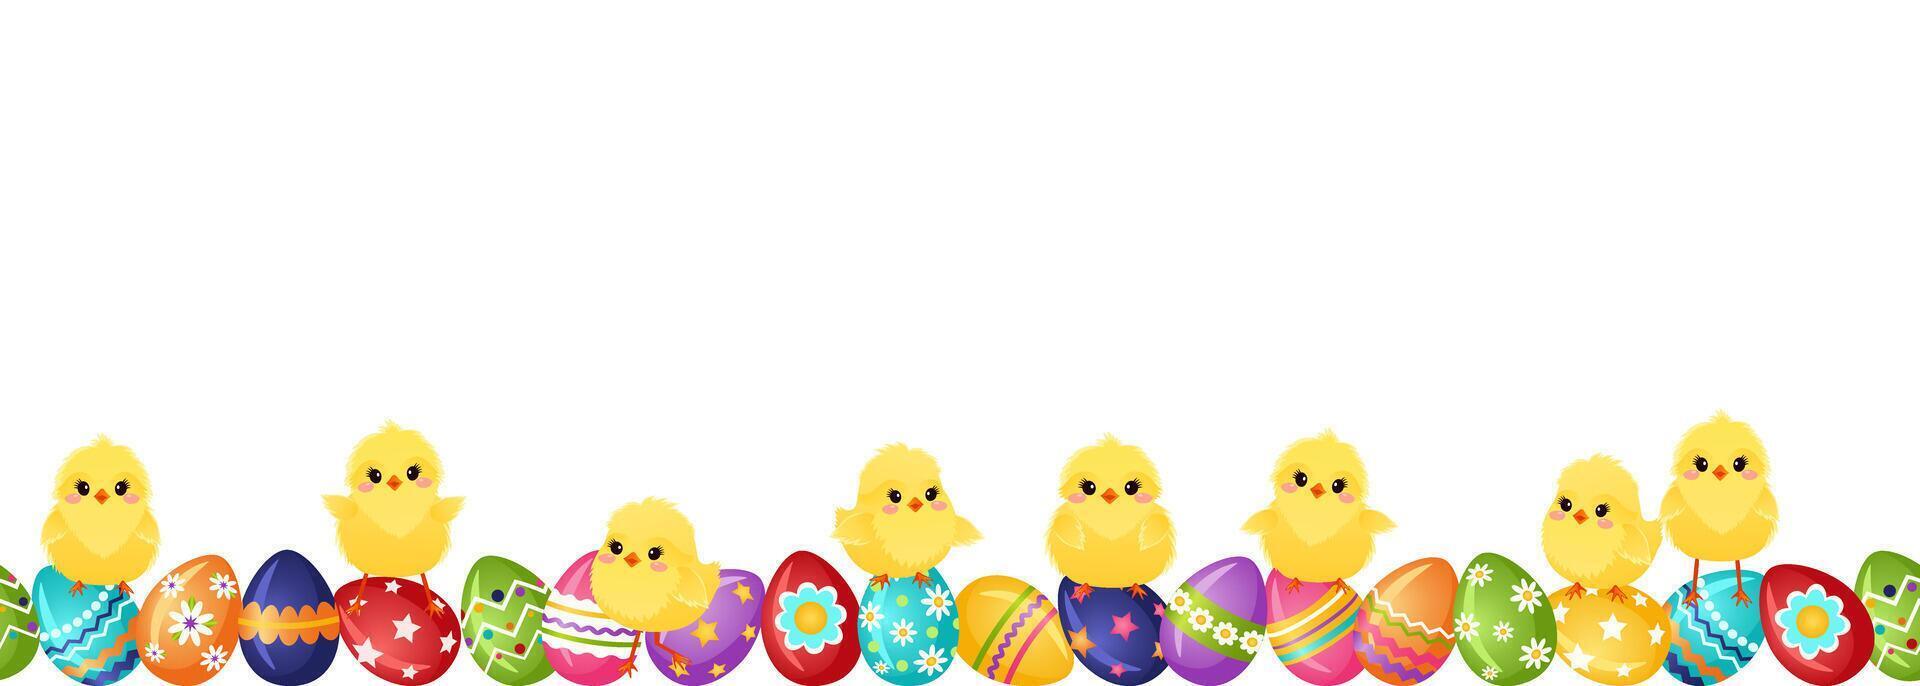 sin costura frontera con Pascua de Resurrección huevos y amarillo gracioso mullido pollos Pascua de Resurrección decoración modelo. horizontal decorativo divisor con pintado huevos y pollos vector ilustración.